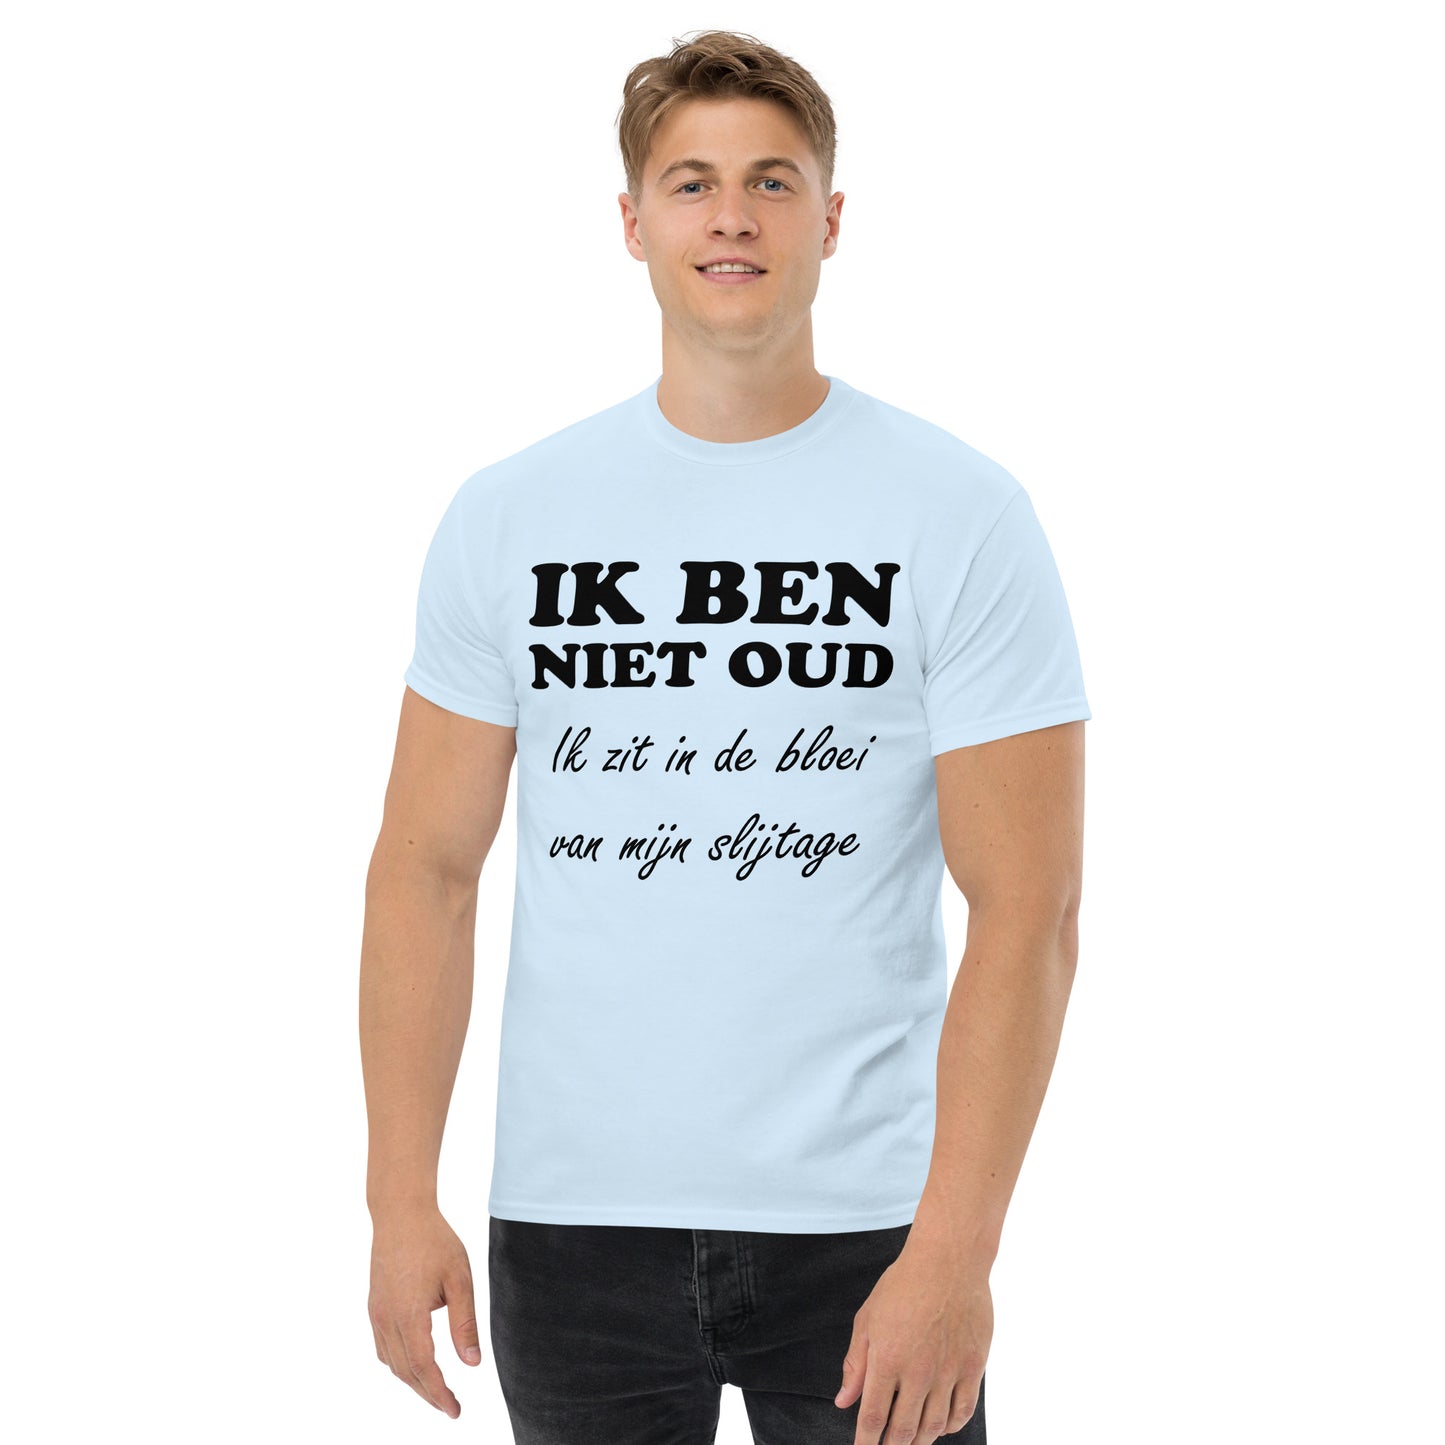 Light blue T-shirt with the text "IK BEN NIET OUD ik zit in de bloei van mijn slijtage"